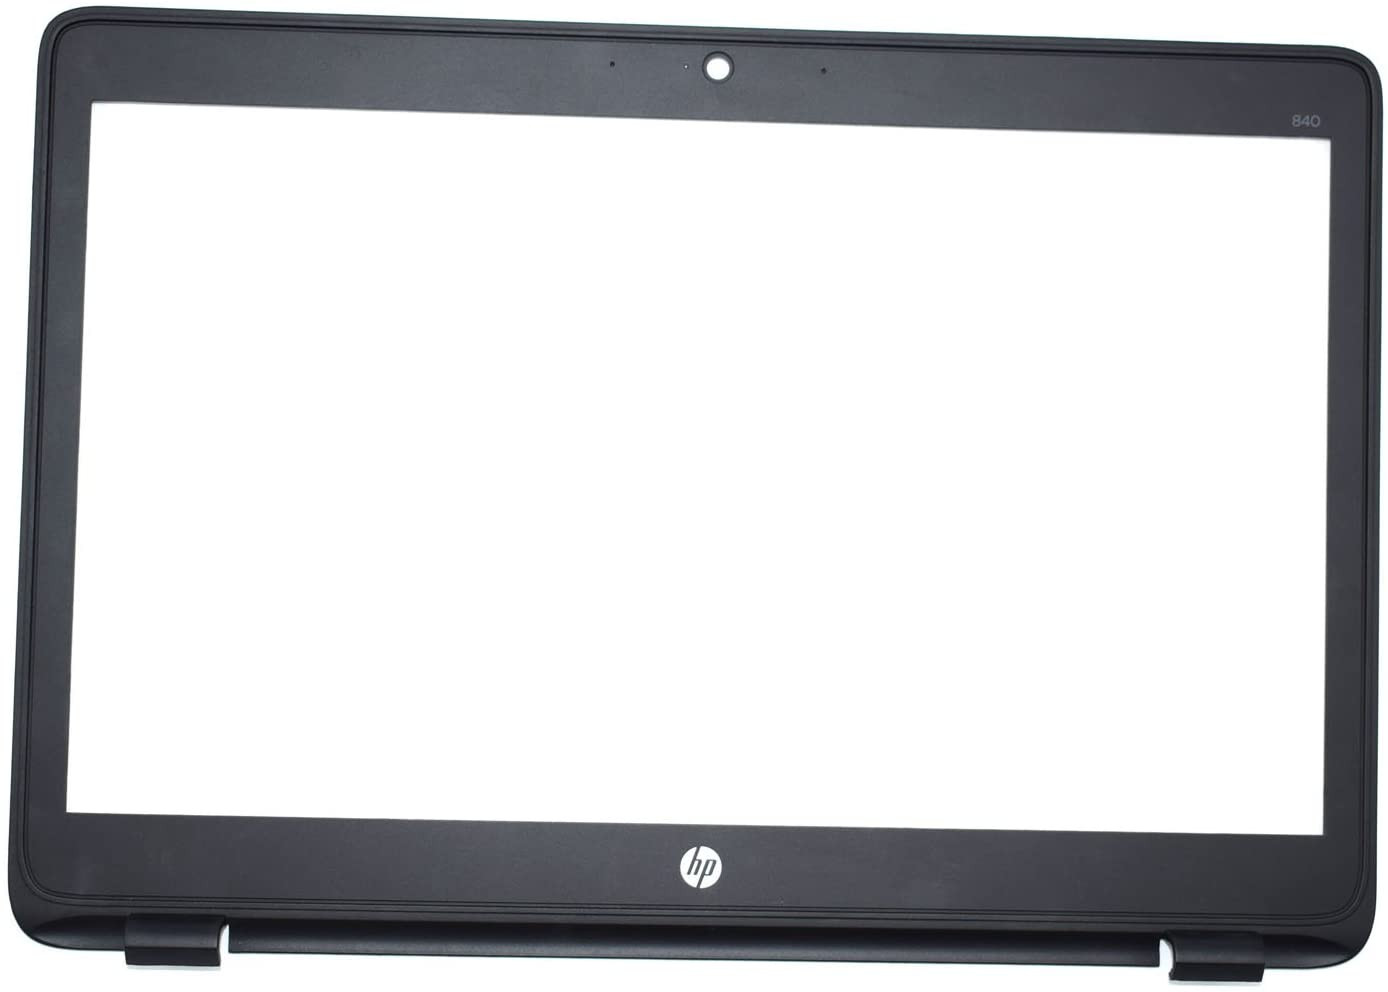 Bezel / Contour écran - HP EliteBook 840 G1